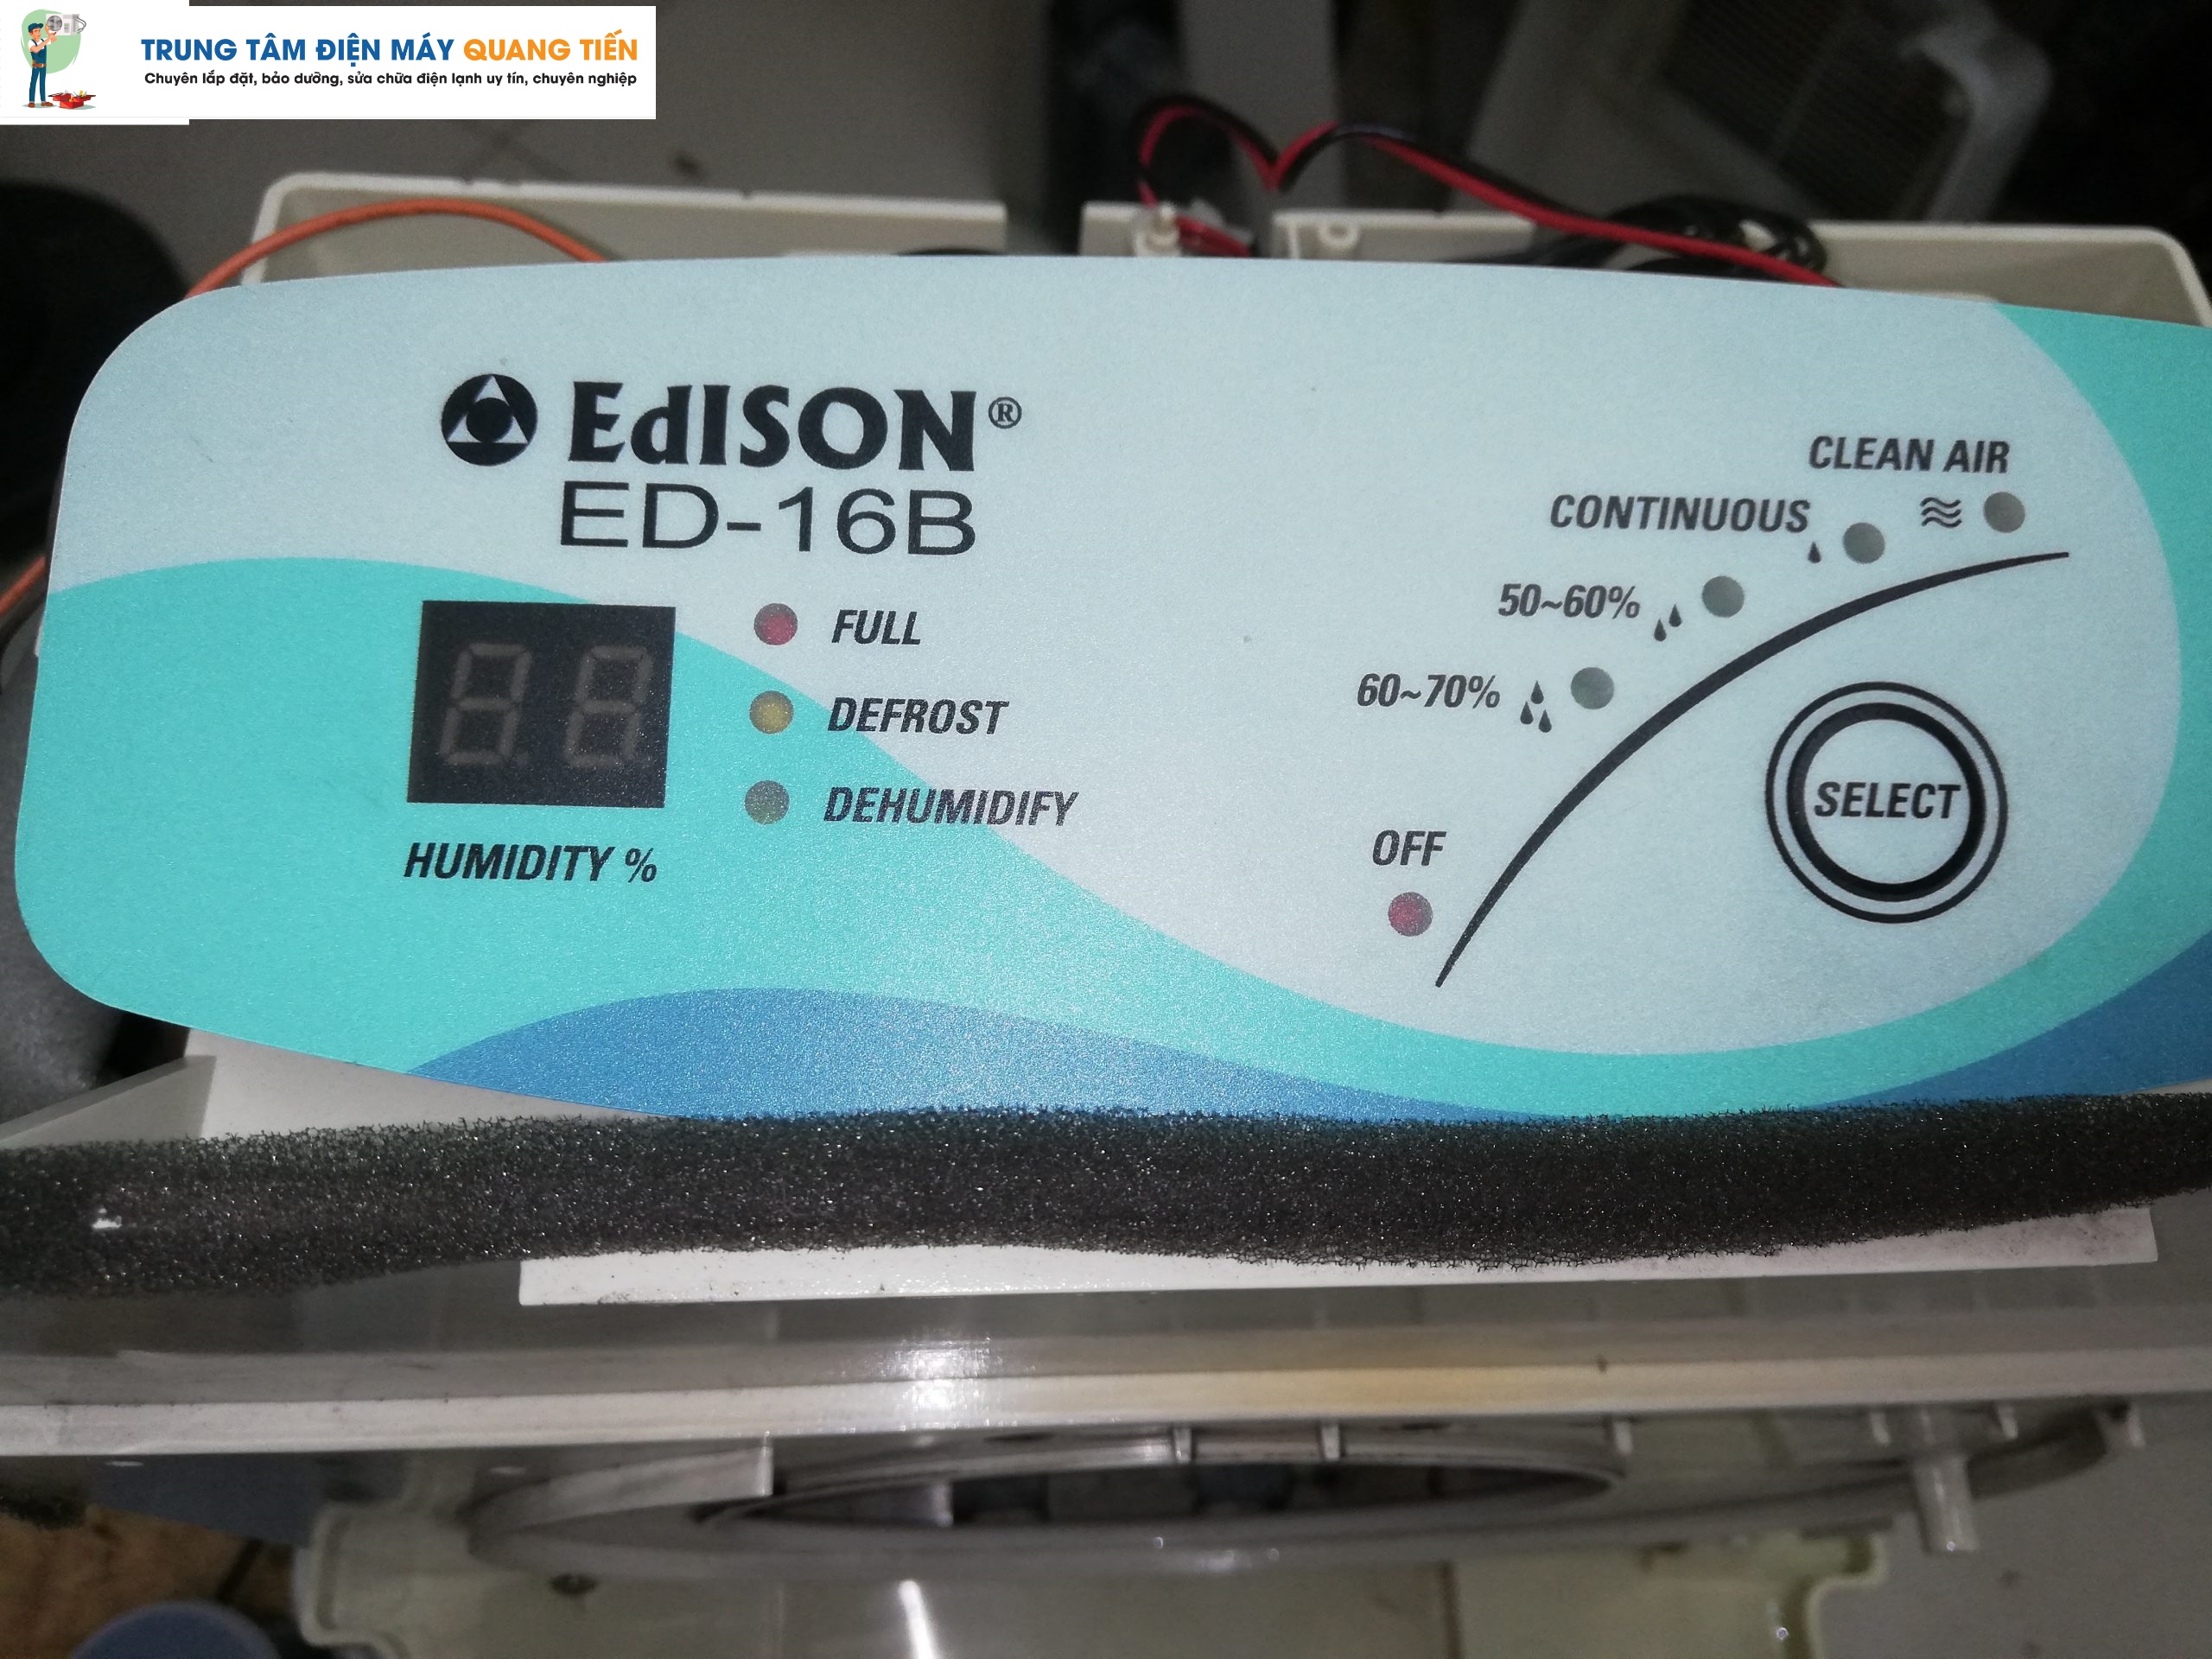 sửa máy hút ẩm Edison tại nhà - Điện Máy Quang Tiến